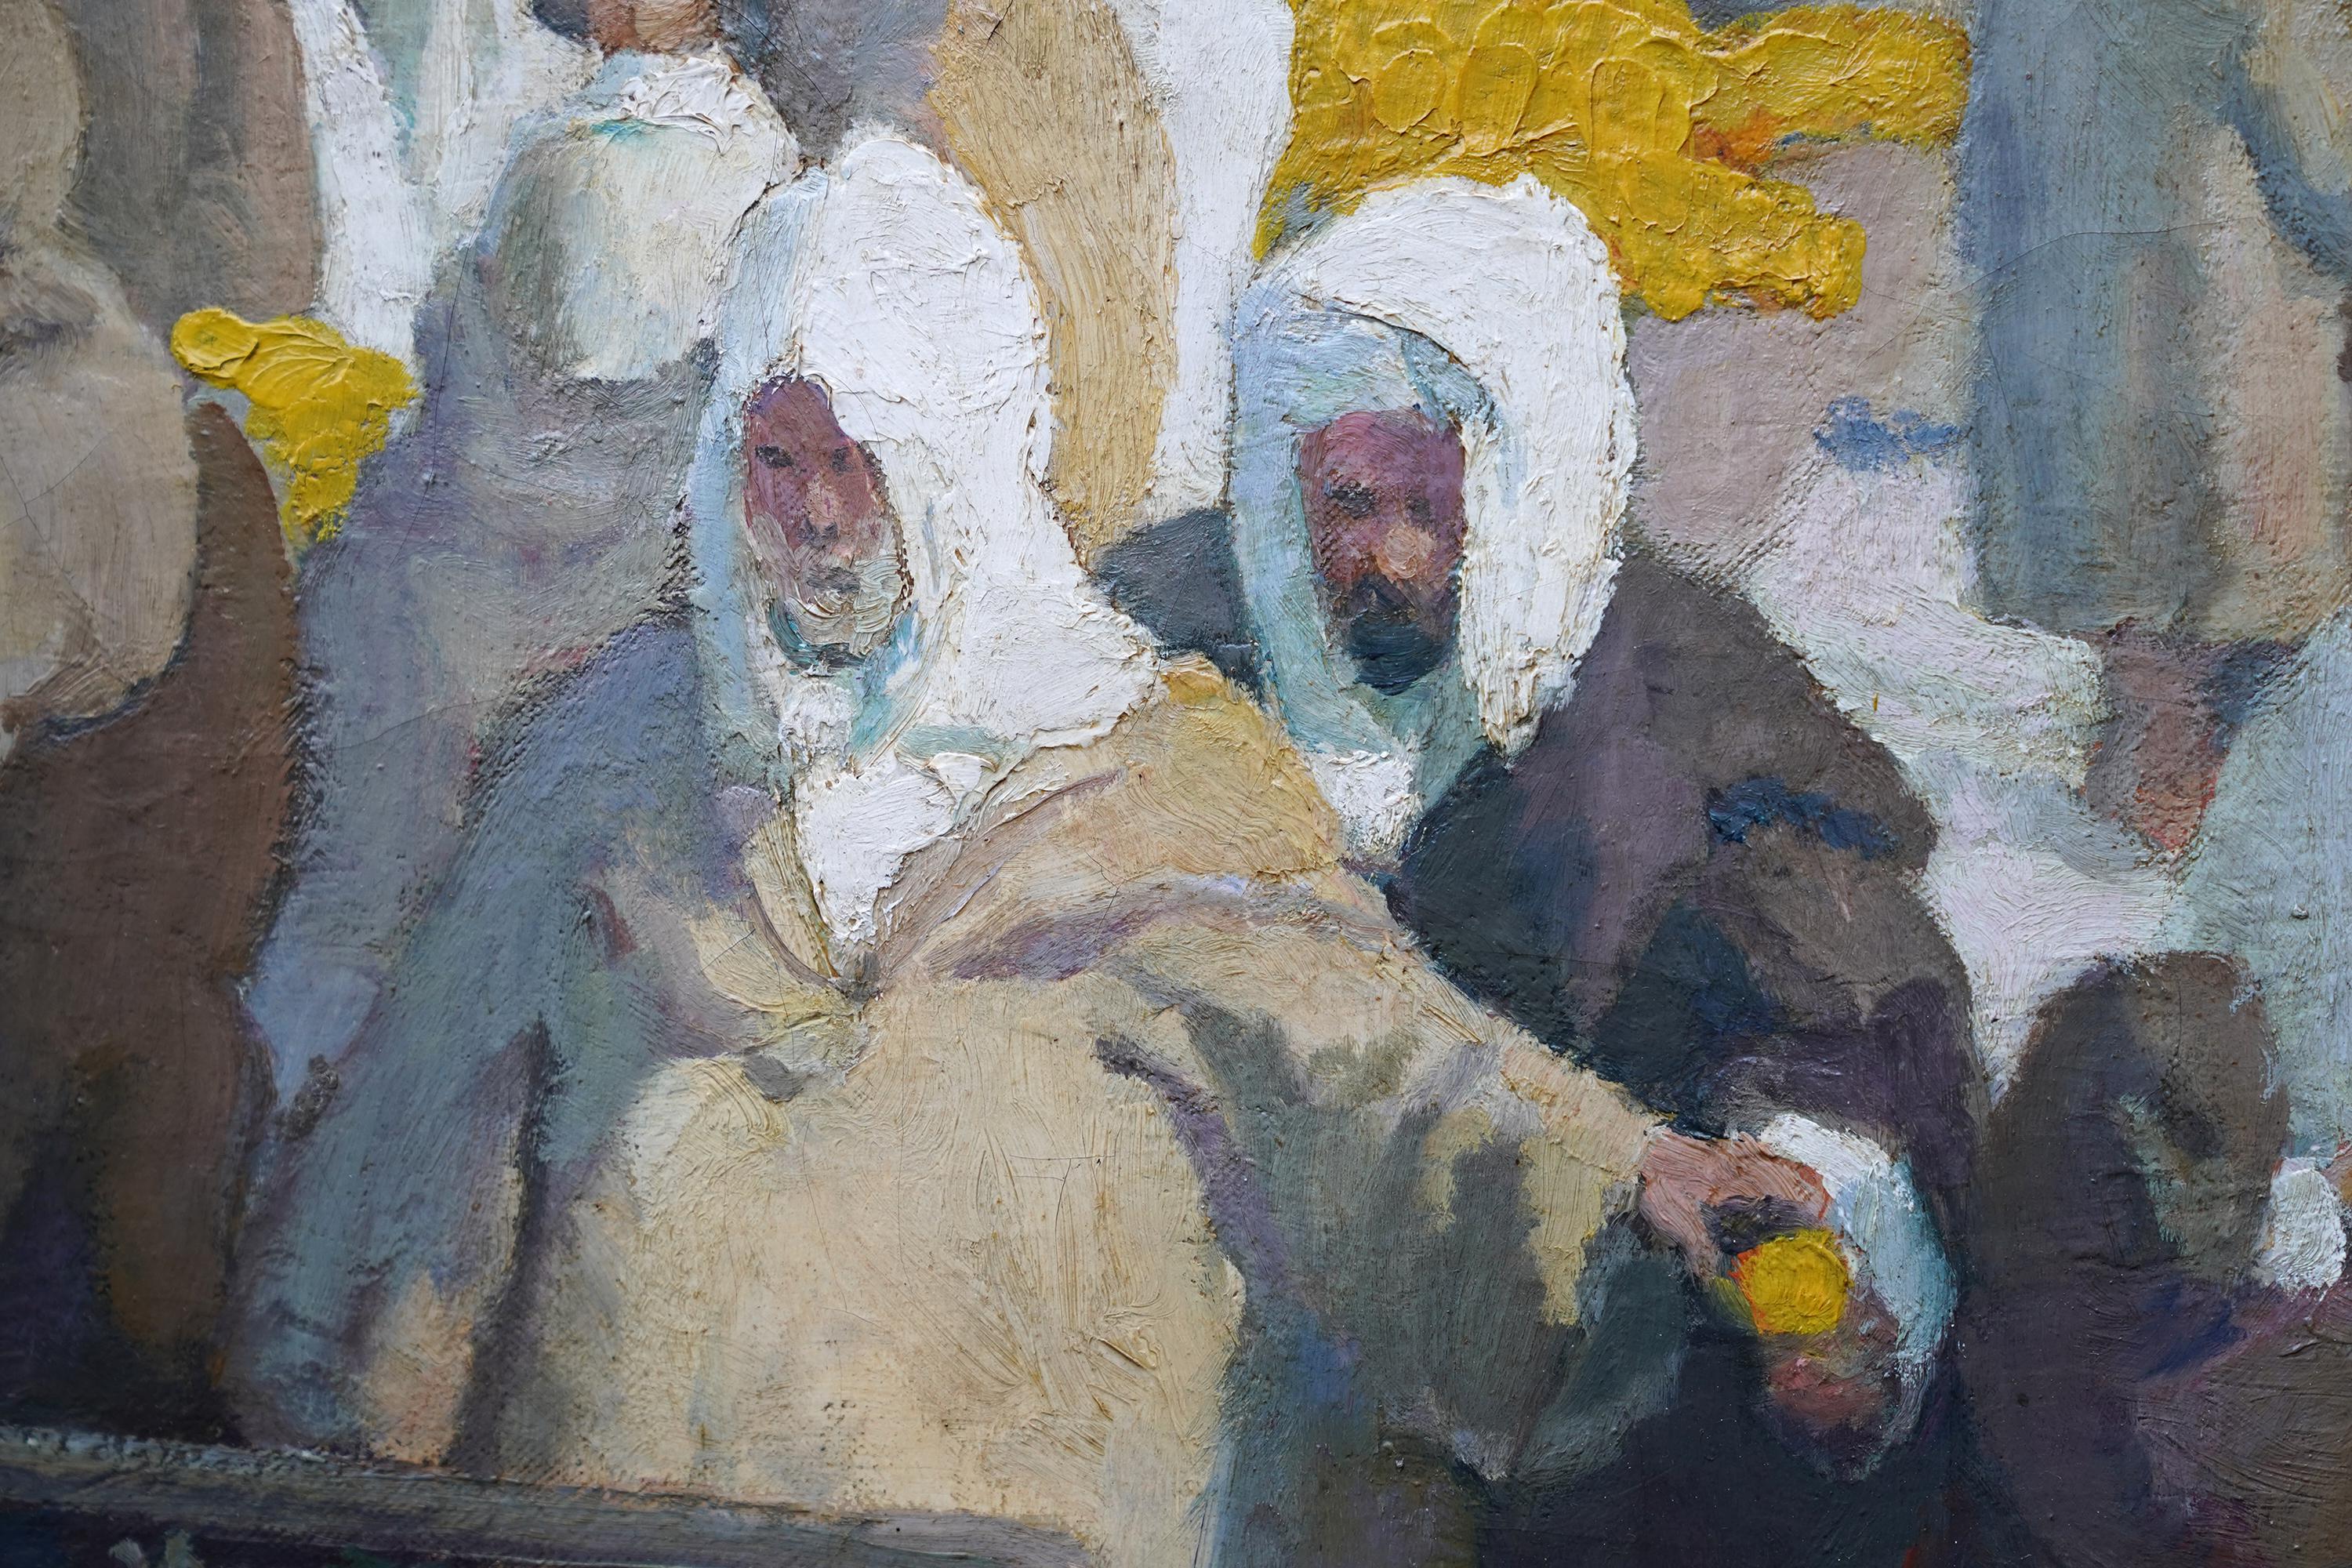 Tangiers Zitronenmarkt - Britisches orientalisches figurales Ölgemälde aus den 1920er Jahren  (Post-Impressionismus), Painting, von Spencer Pryse